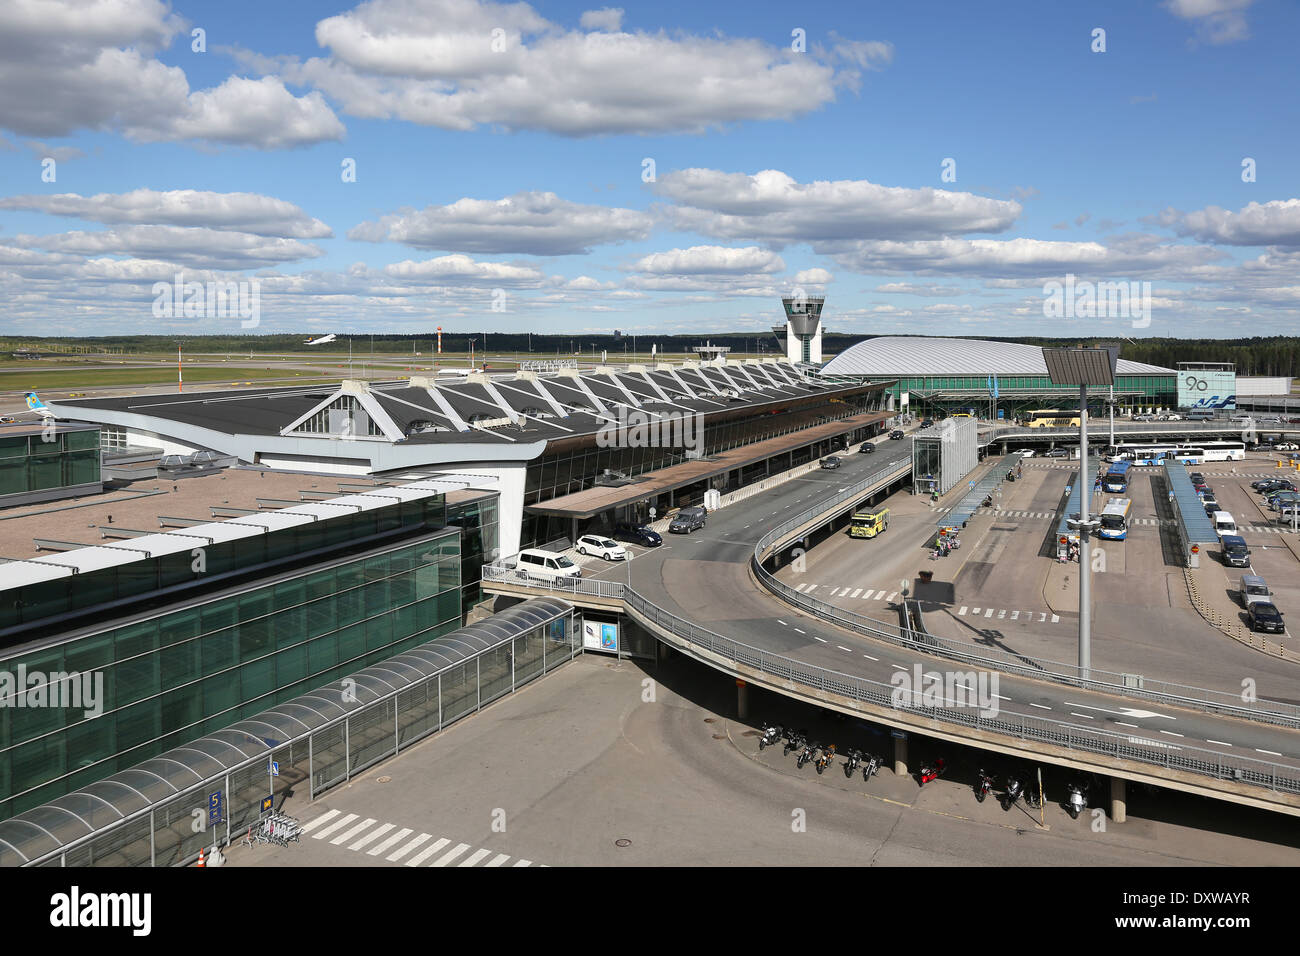 Helsinki, Finland - August 23, 2013: Overview of Helsinki Vantaa International Airport Terminal 2 (HEL) in Helsinki, Finland. Stock Photo